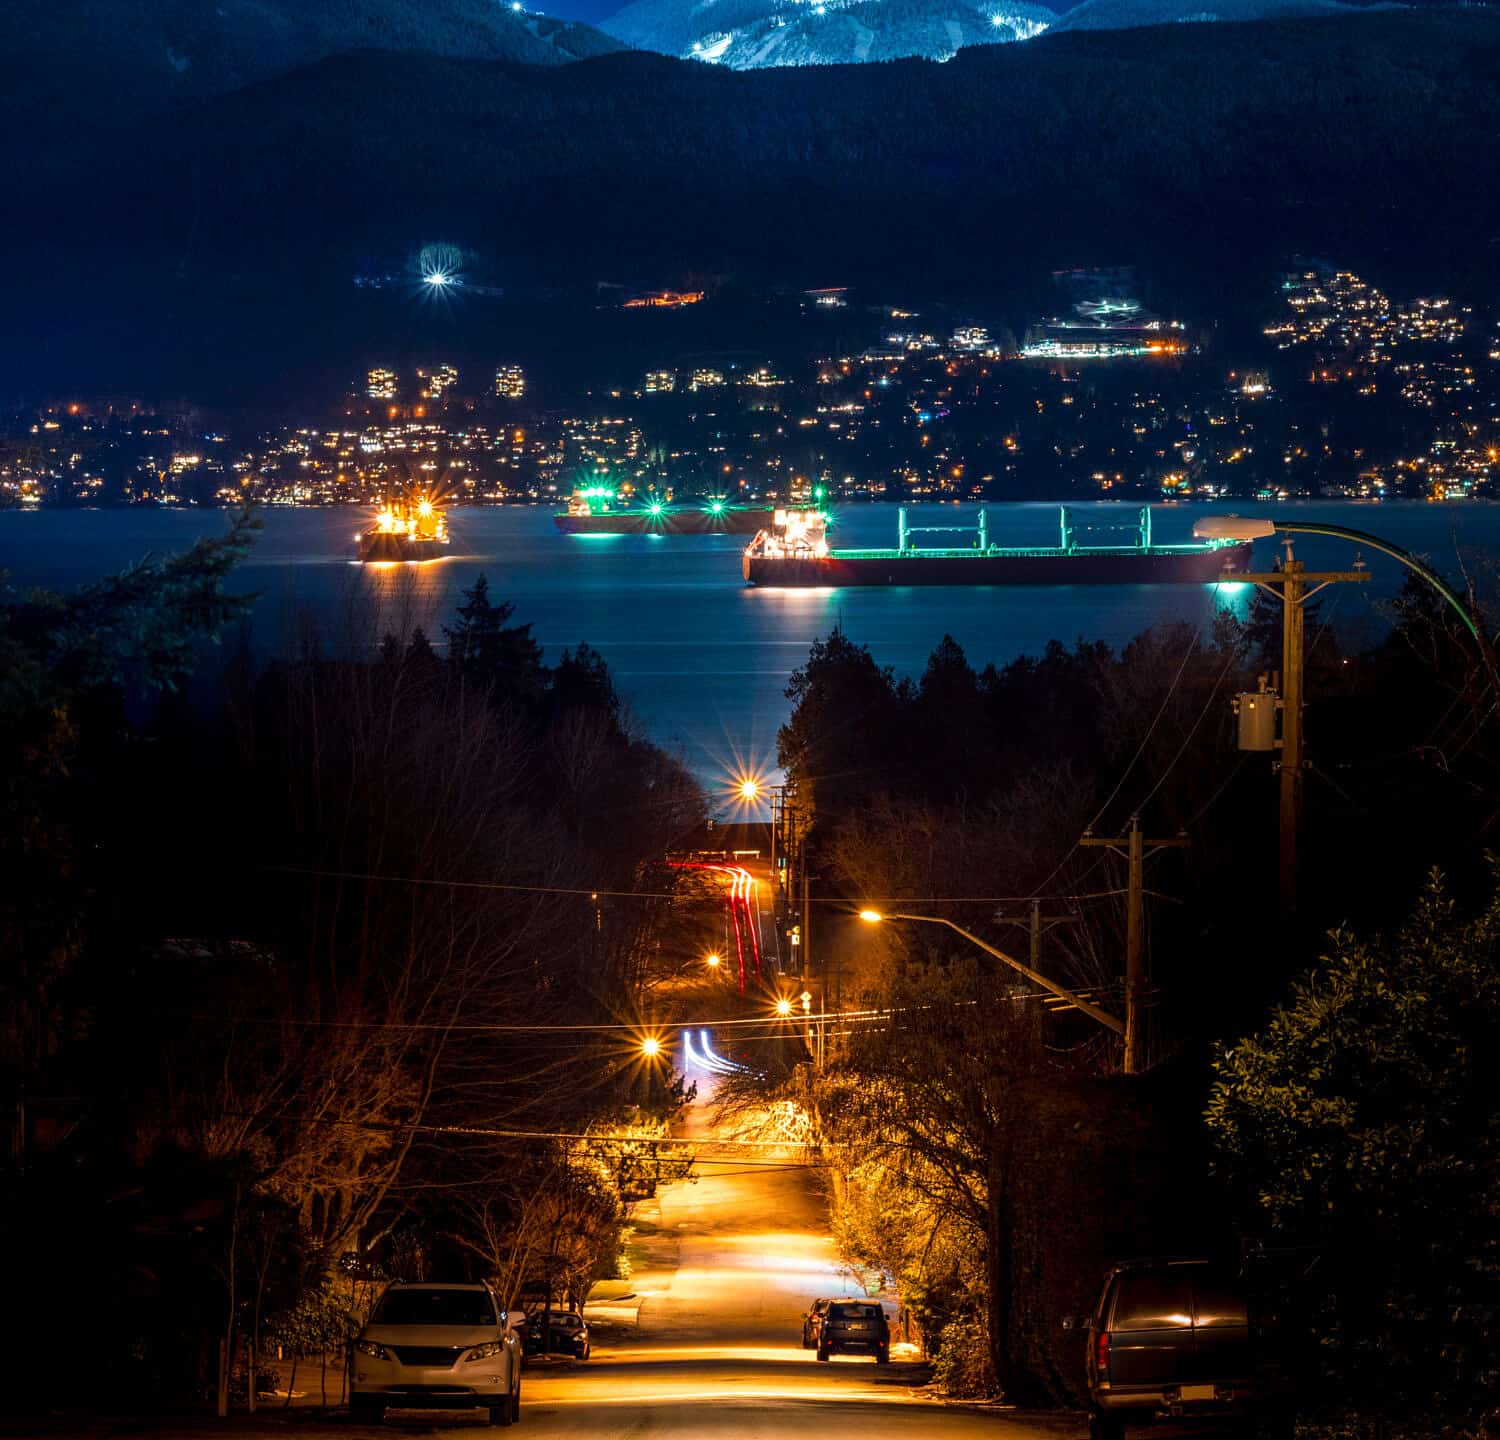 VANCOUVER MOUNTAIN SCAPE DI NOTTE - Bella scena di lampione urbano urbano, guardando in discesa sulle navi nel porto.  Splendida vista in lontananza.  Grouse Mountain a Vancouver, British Columbia, Canada